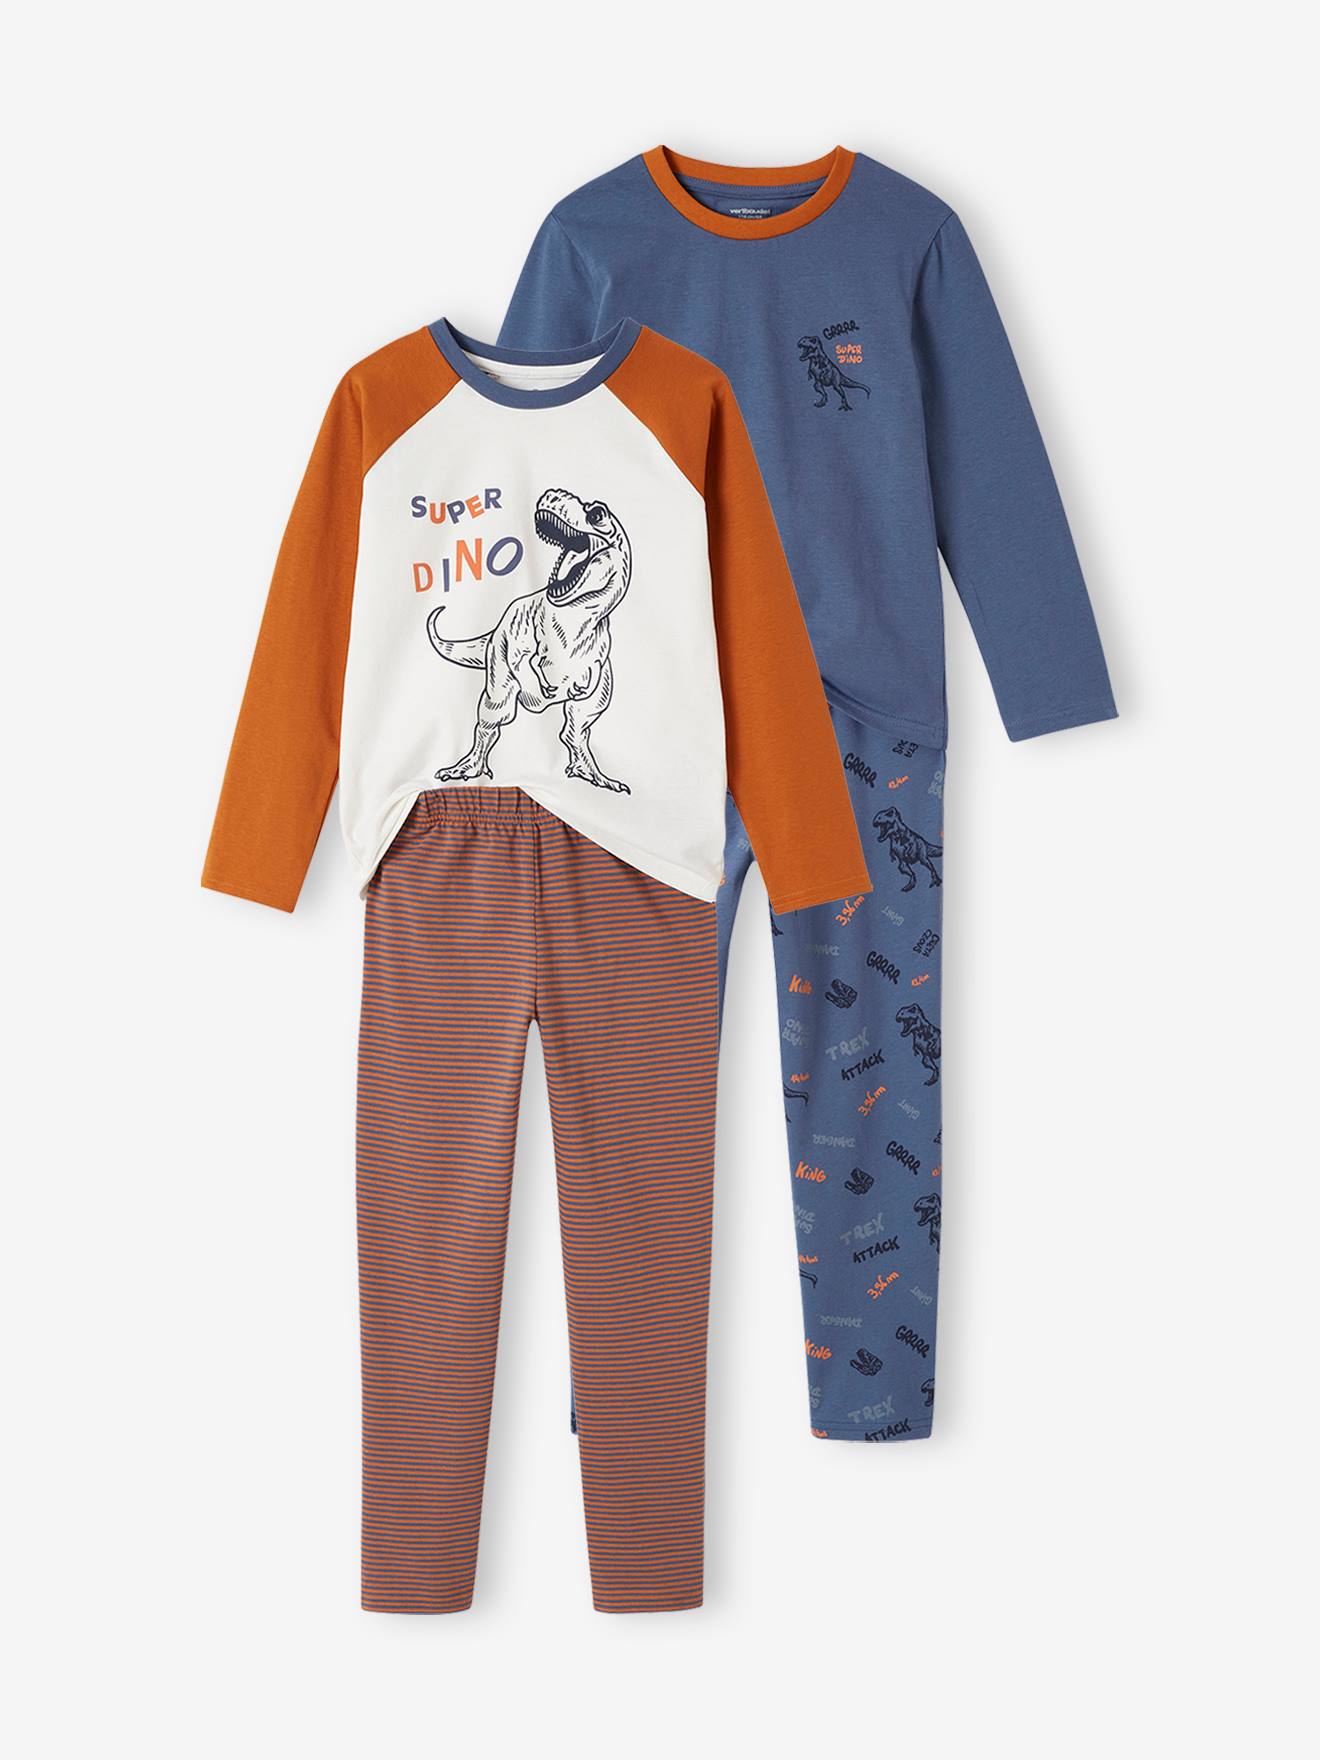 Pack of 2 Dino Pyjamas for Boys indigo